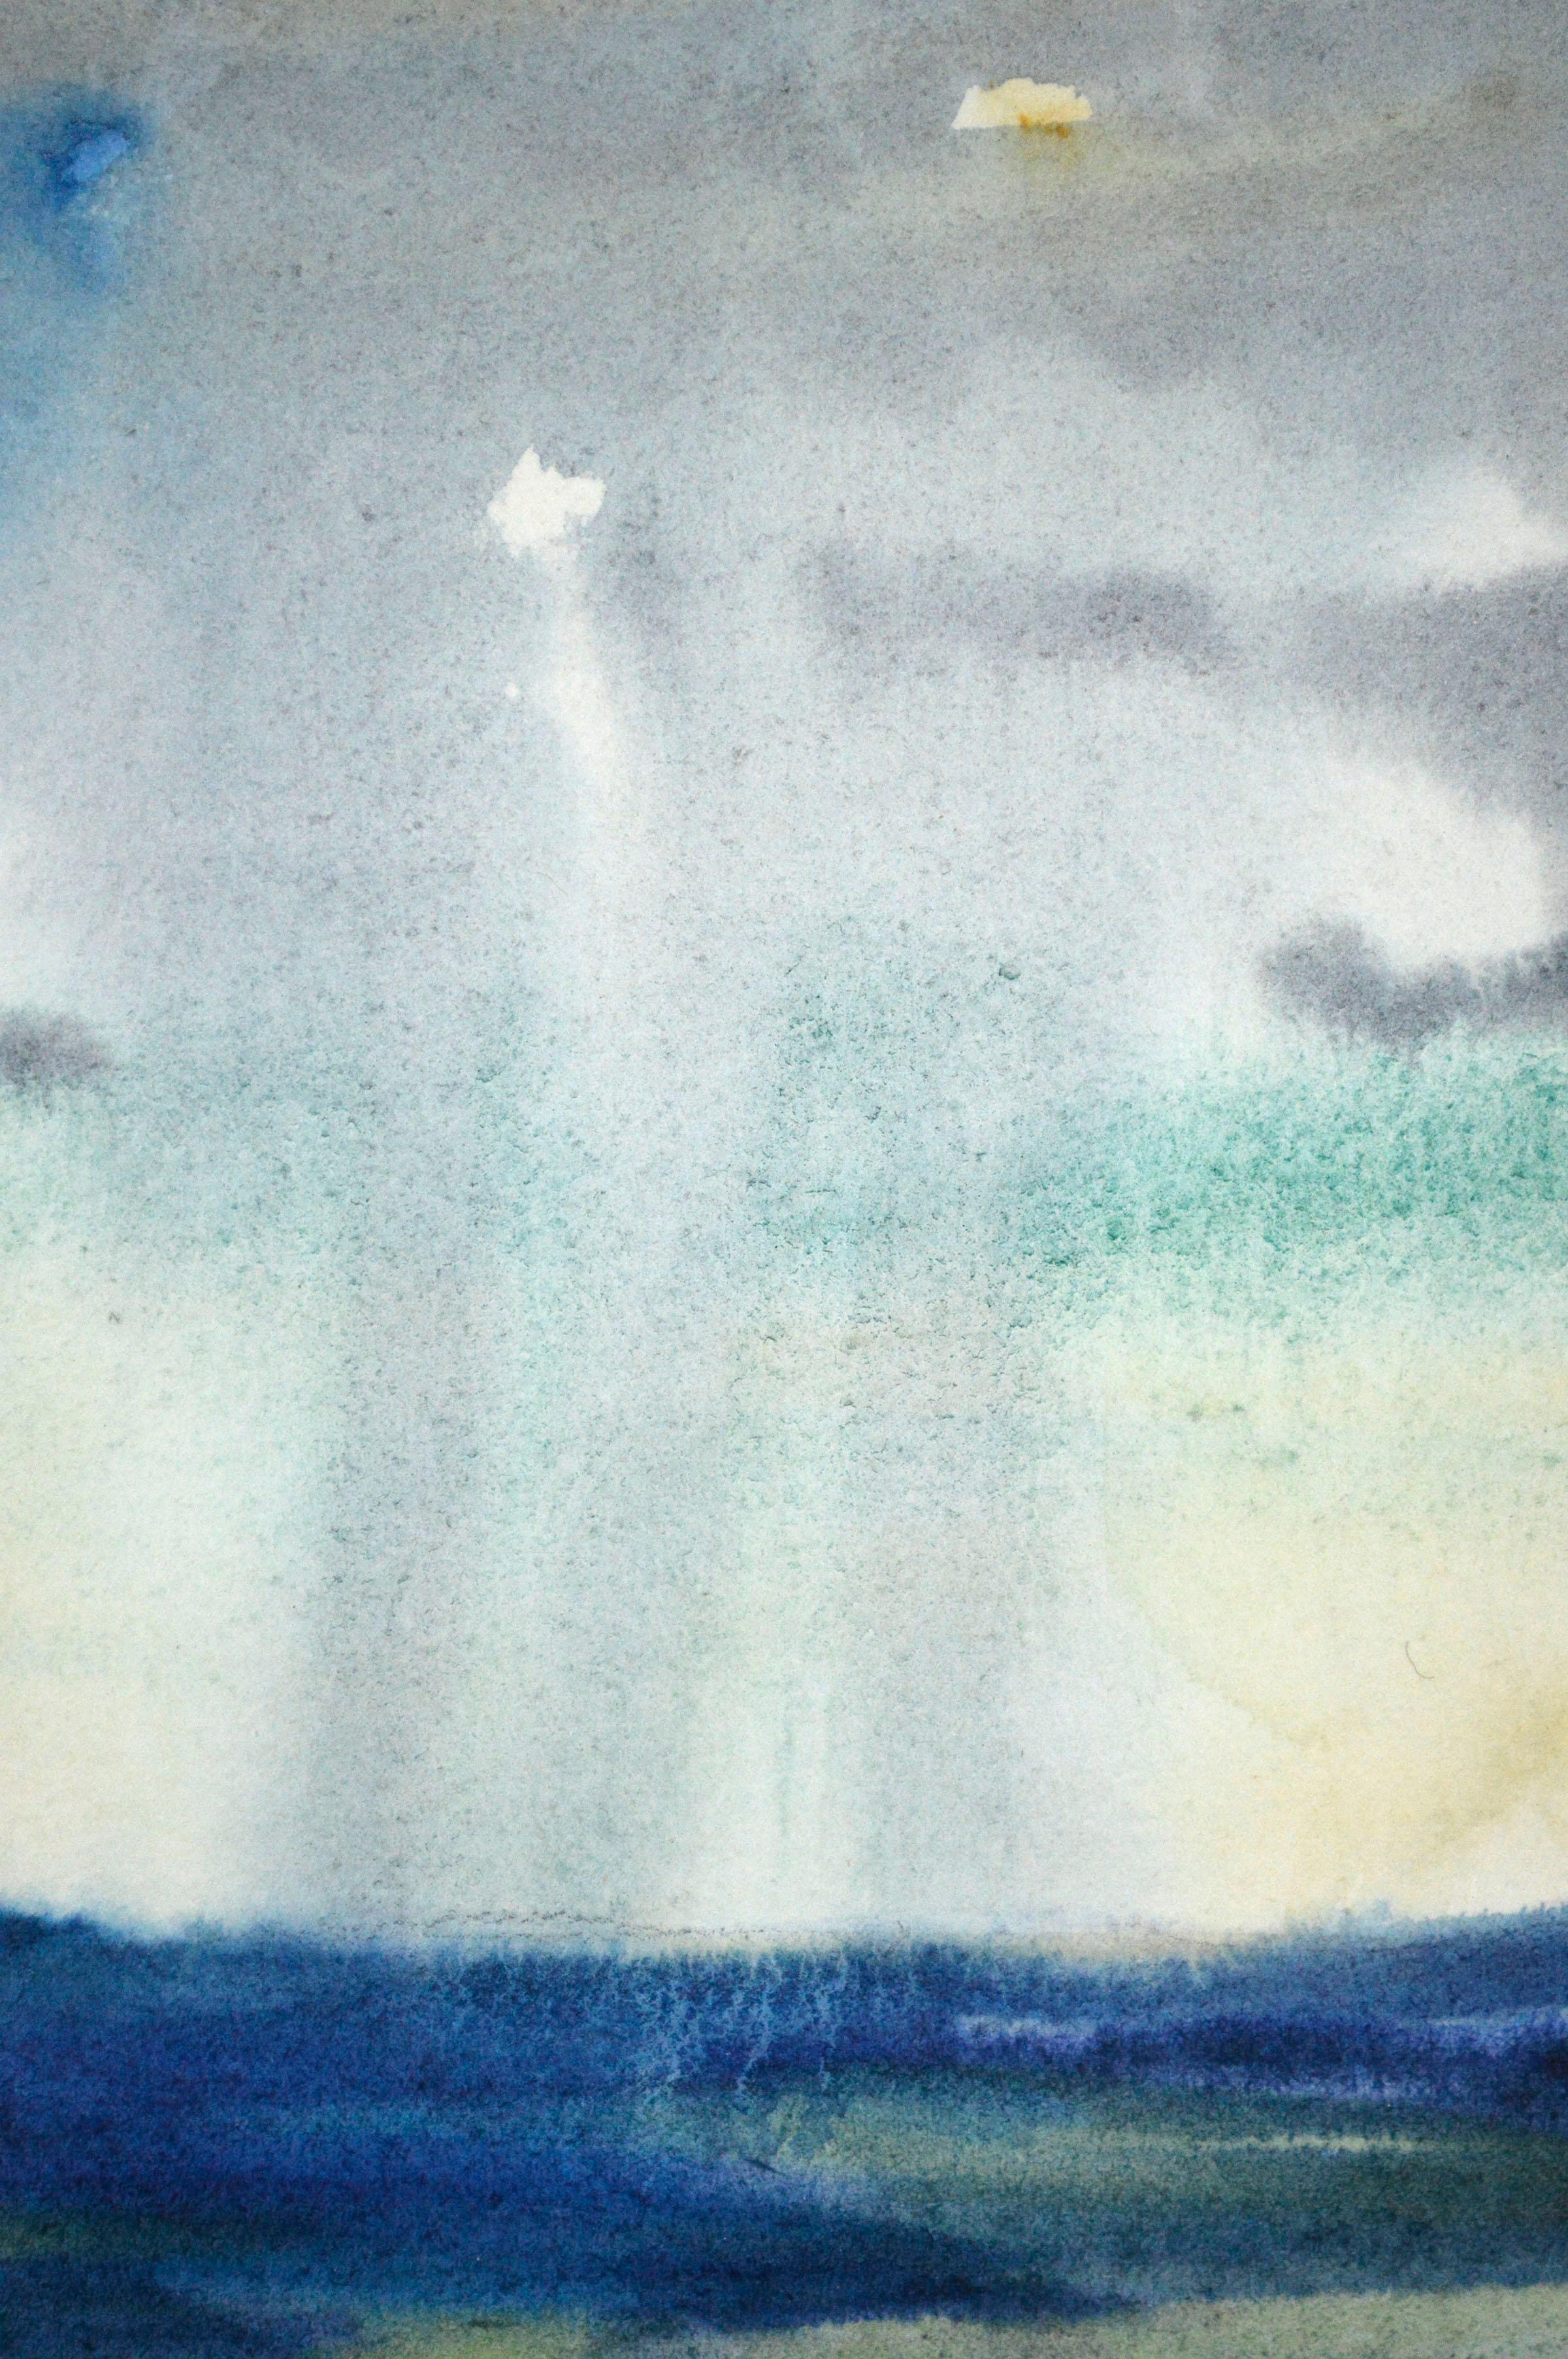 Magnifique paysage d'aquarelle du milieu des années 1930 représentant une vaste vallée avec une tempête de pluie au loin, réalisé par l'artiste californien Leslie Bruner Wulff (Américain, 1890-1968). L'atmosphère et le sentiment d'une tempête